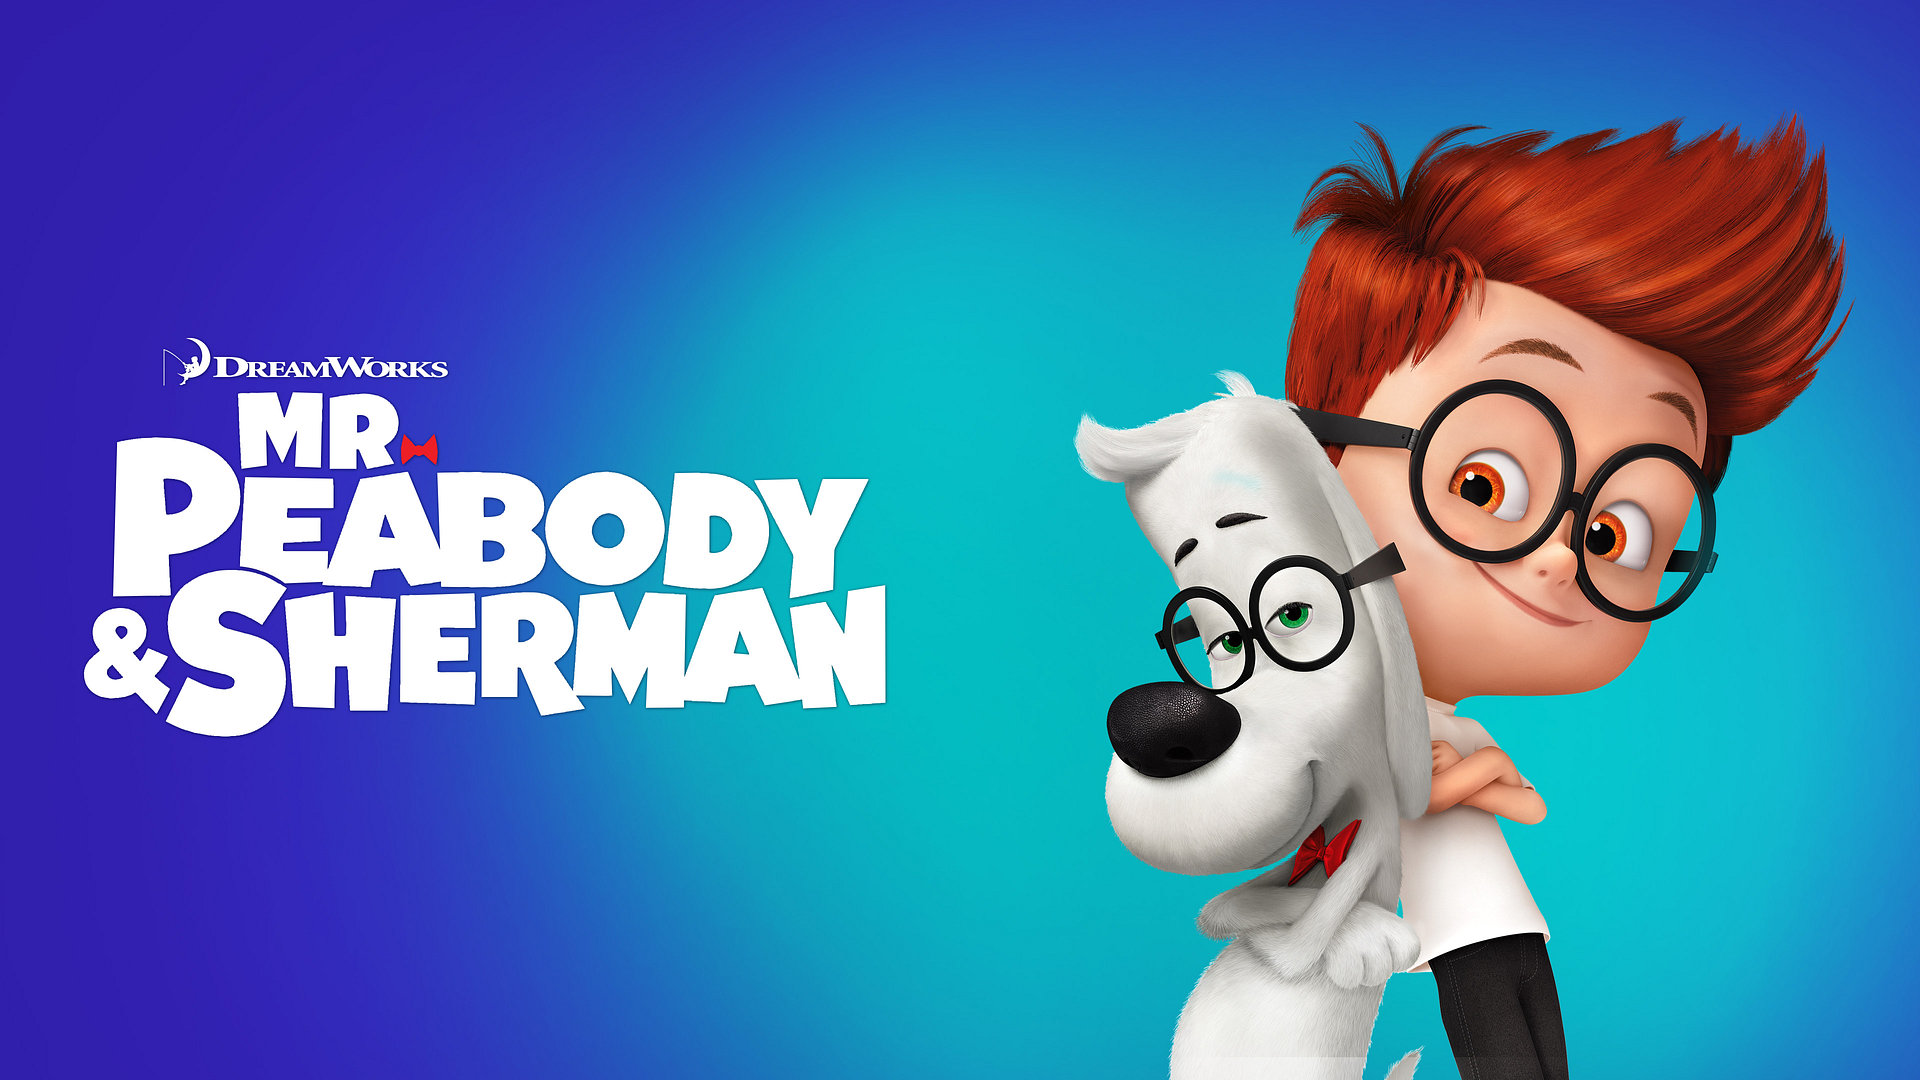 Peabody & Sherman